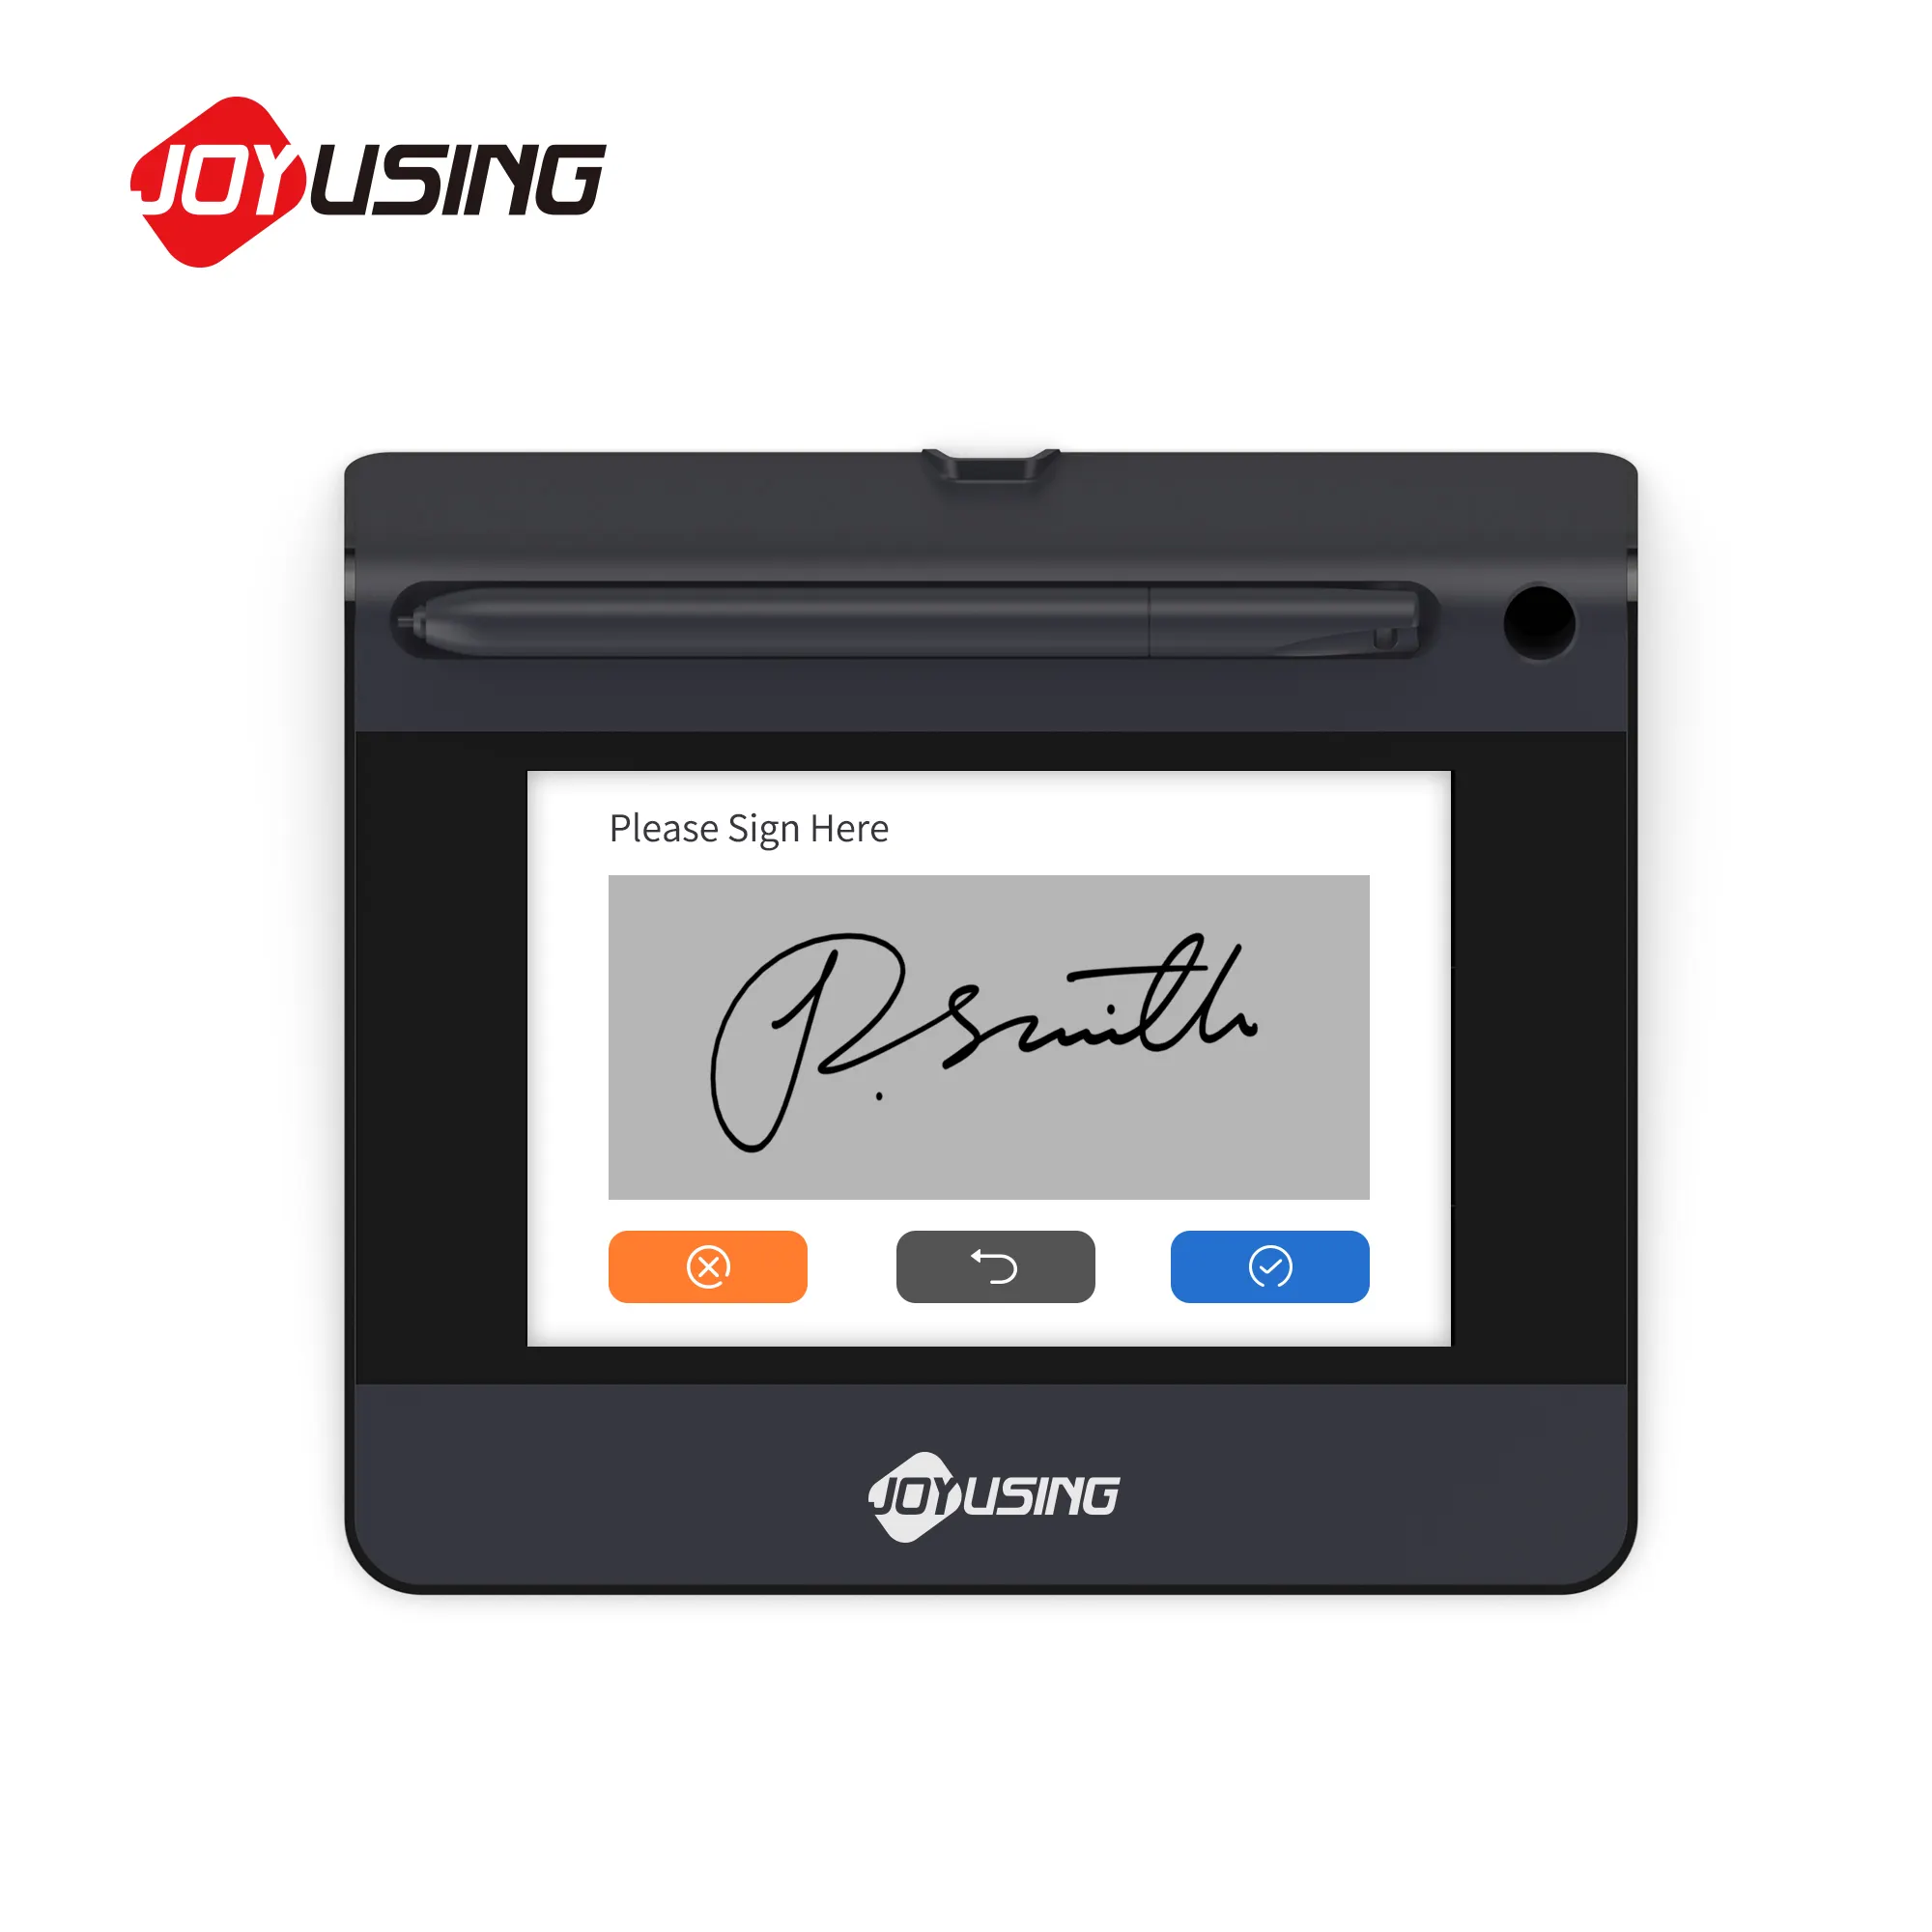 खुशी का उपयोग करते हुए S550 उन्नत एलसीडी हस्ताक्षर पैड इलेक्ट्रॉनिक हस्ताक्षर लेखन पैड इलेक्ट्रॉनिक हस्ताक्षर लेखन पैड